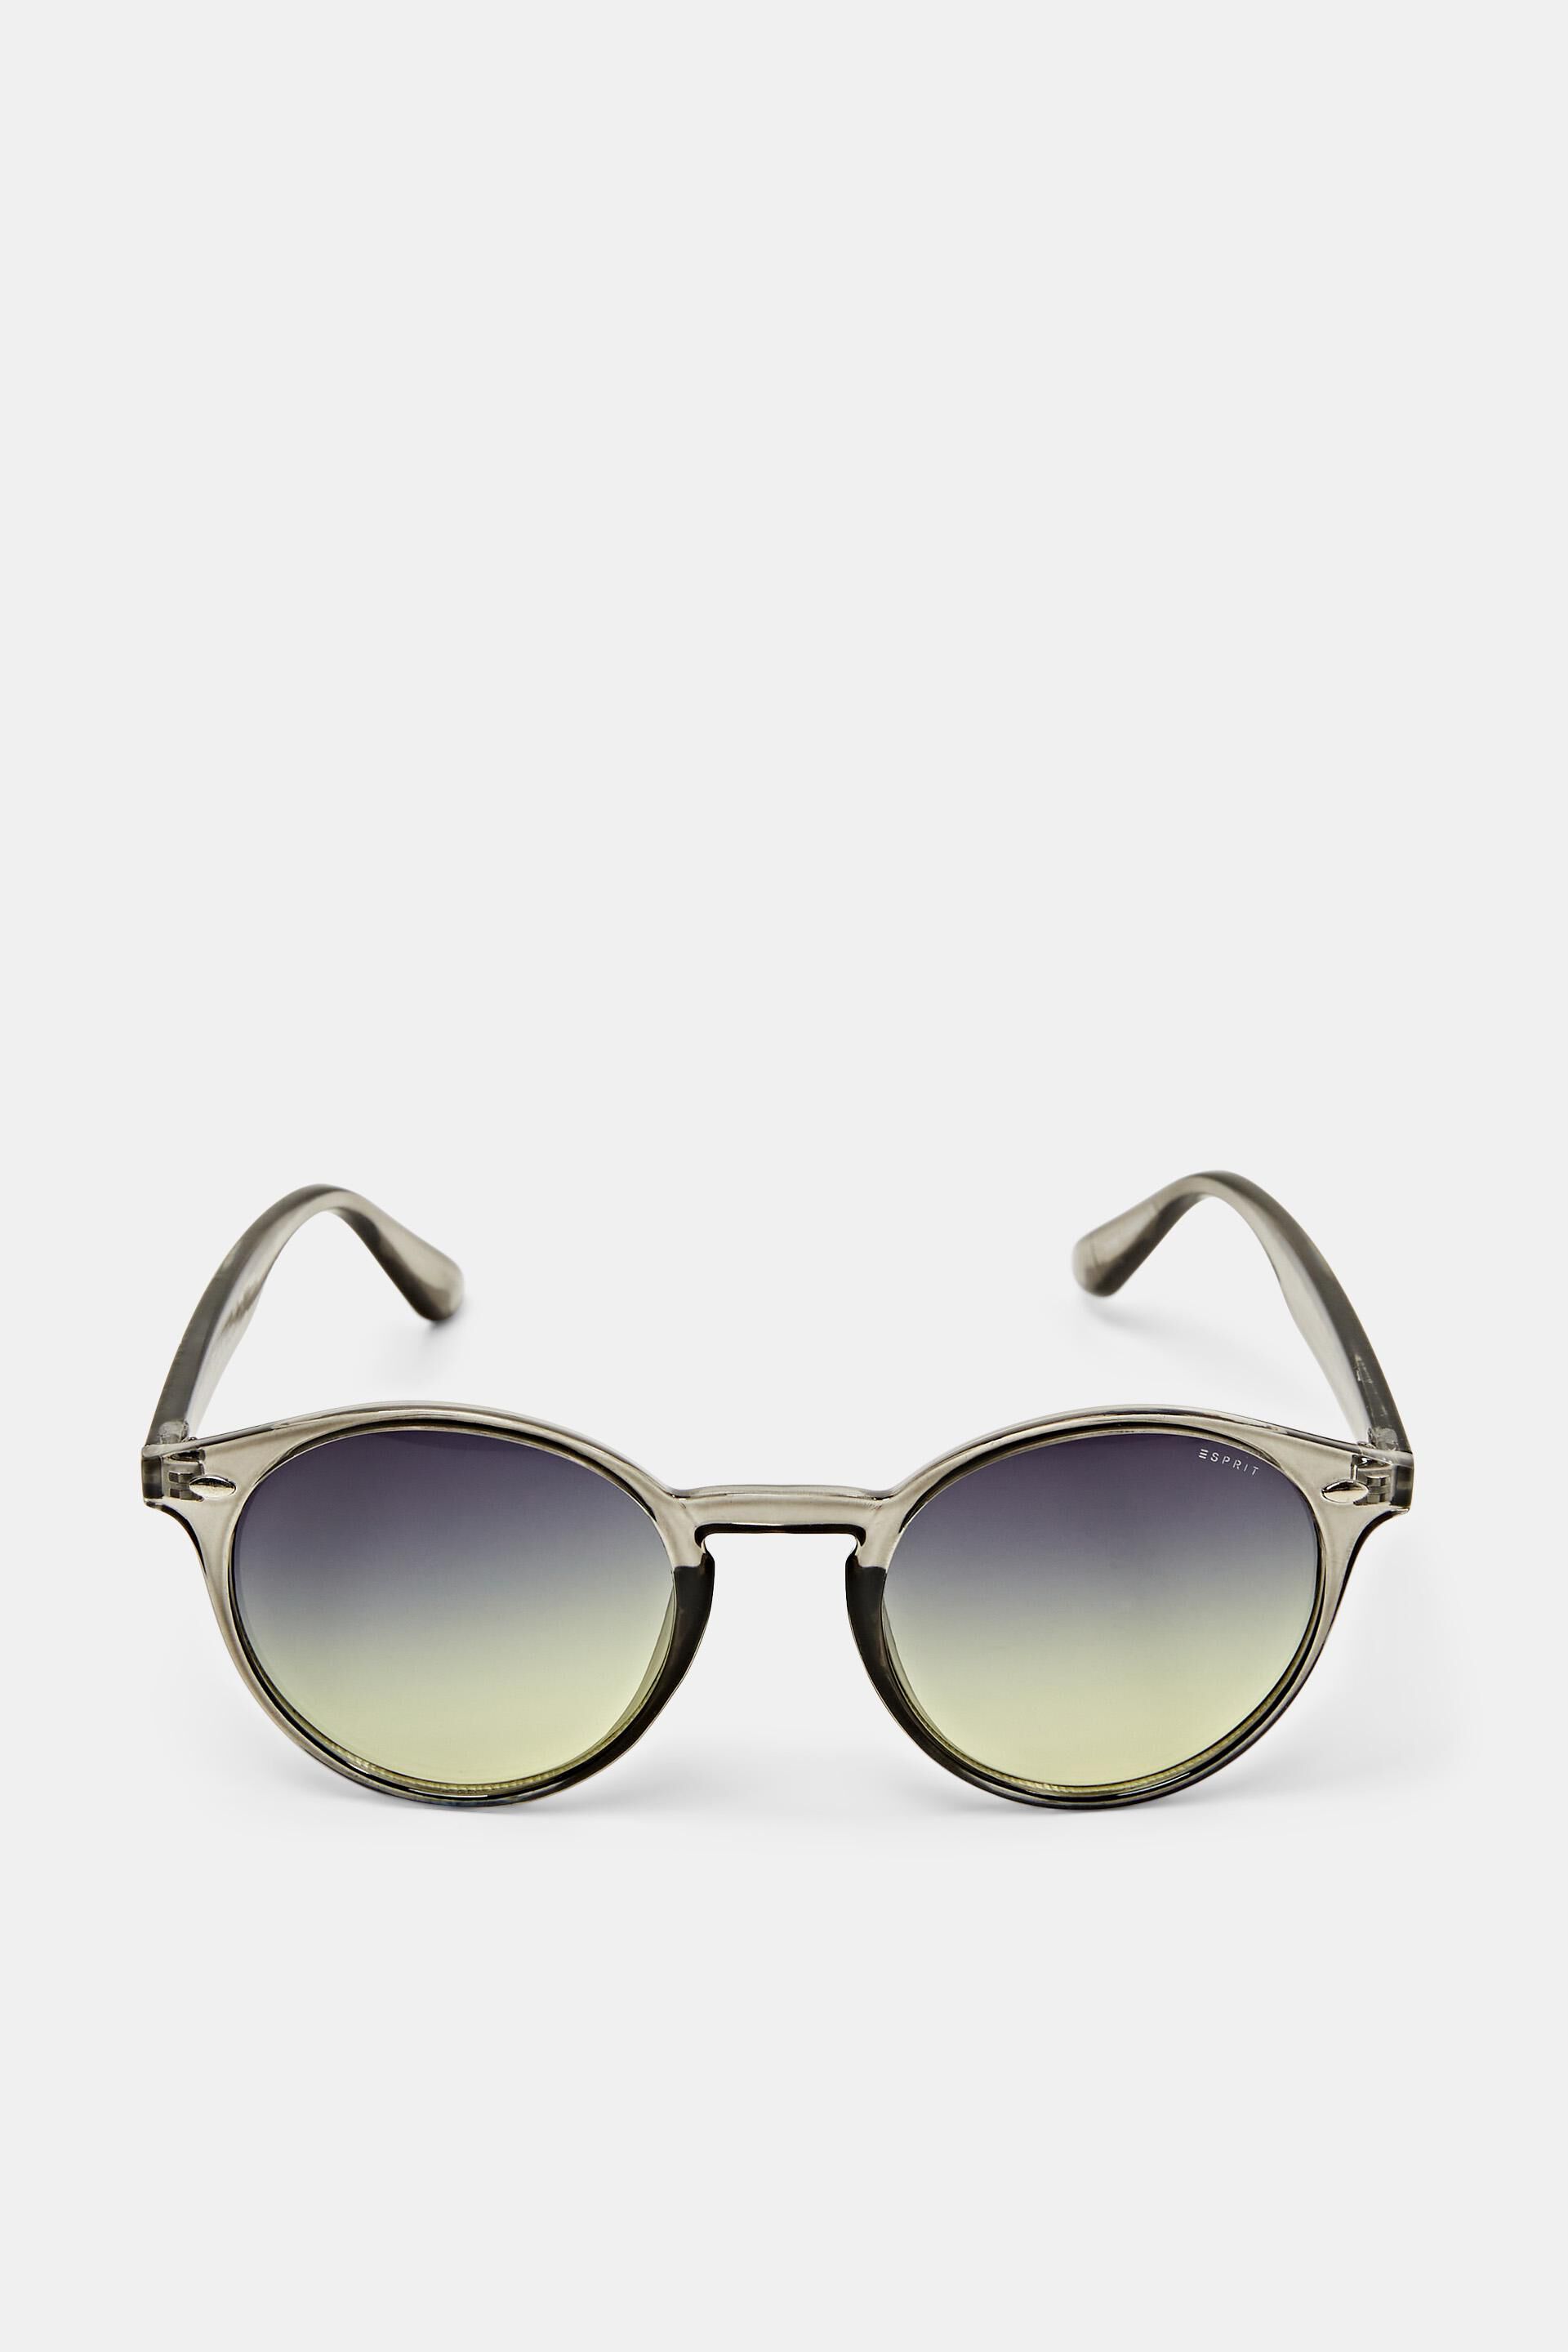 Esprit with lenses Sunglasses round